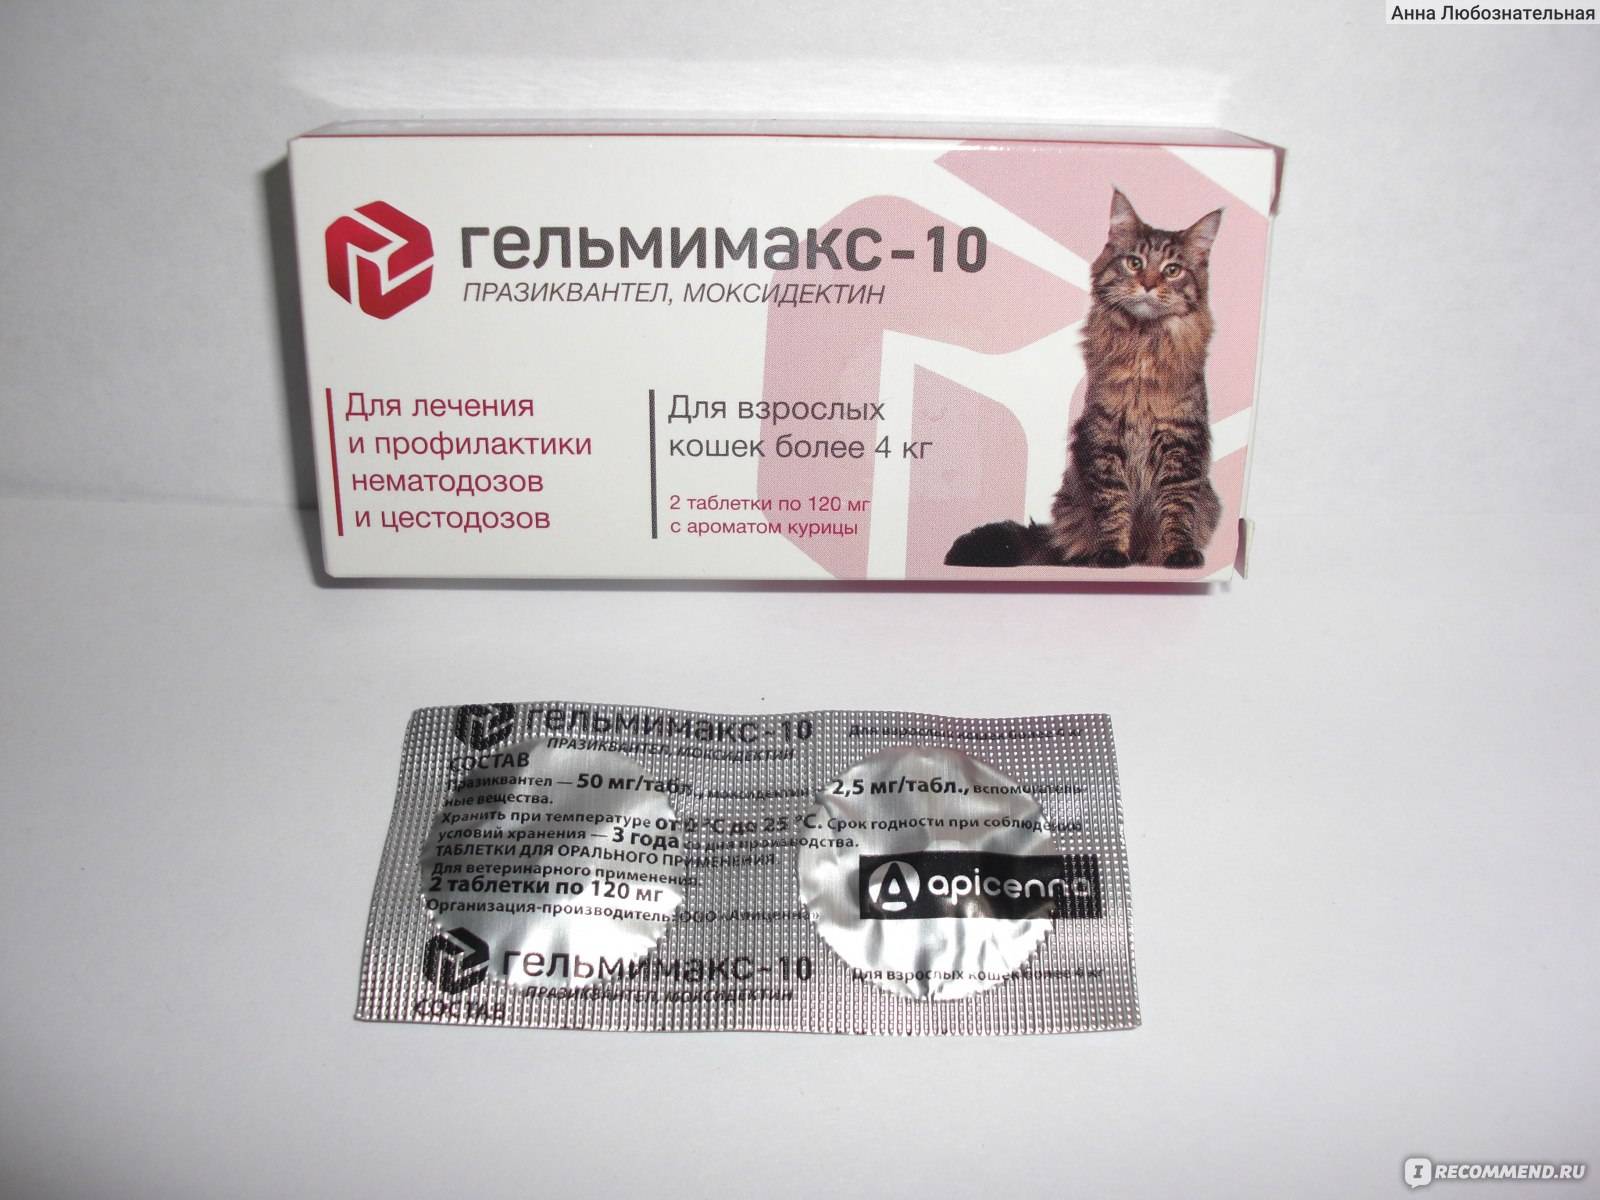 Каниквантел плюс для кошек - инструкция по применению препарата